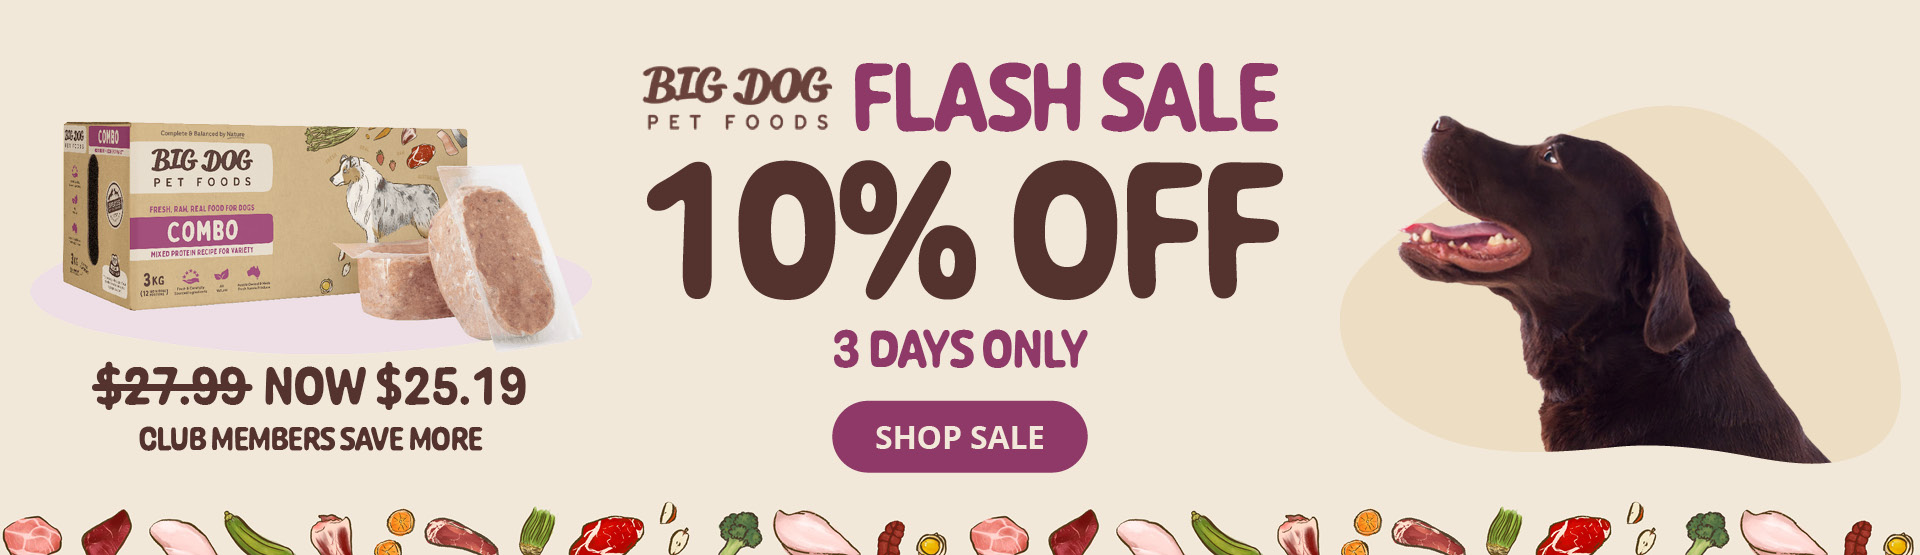 Big dog flash sale 10% off